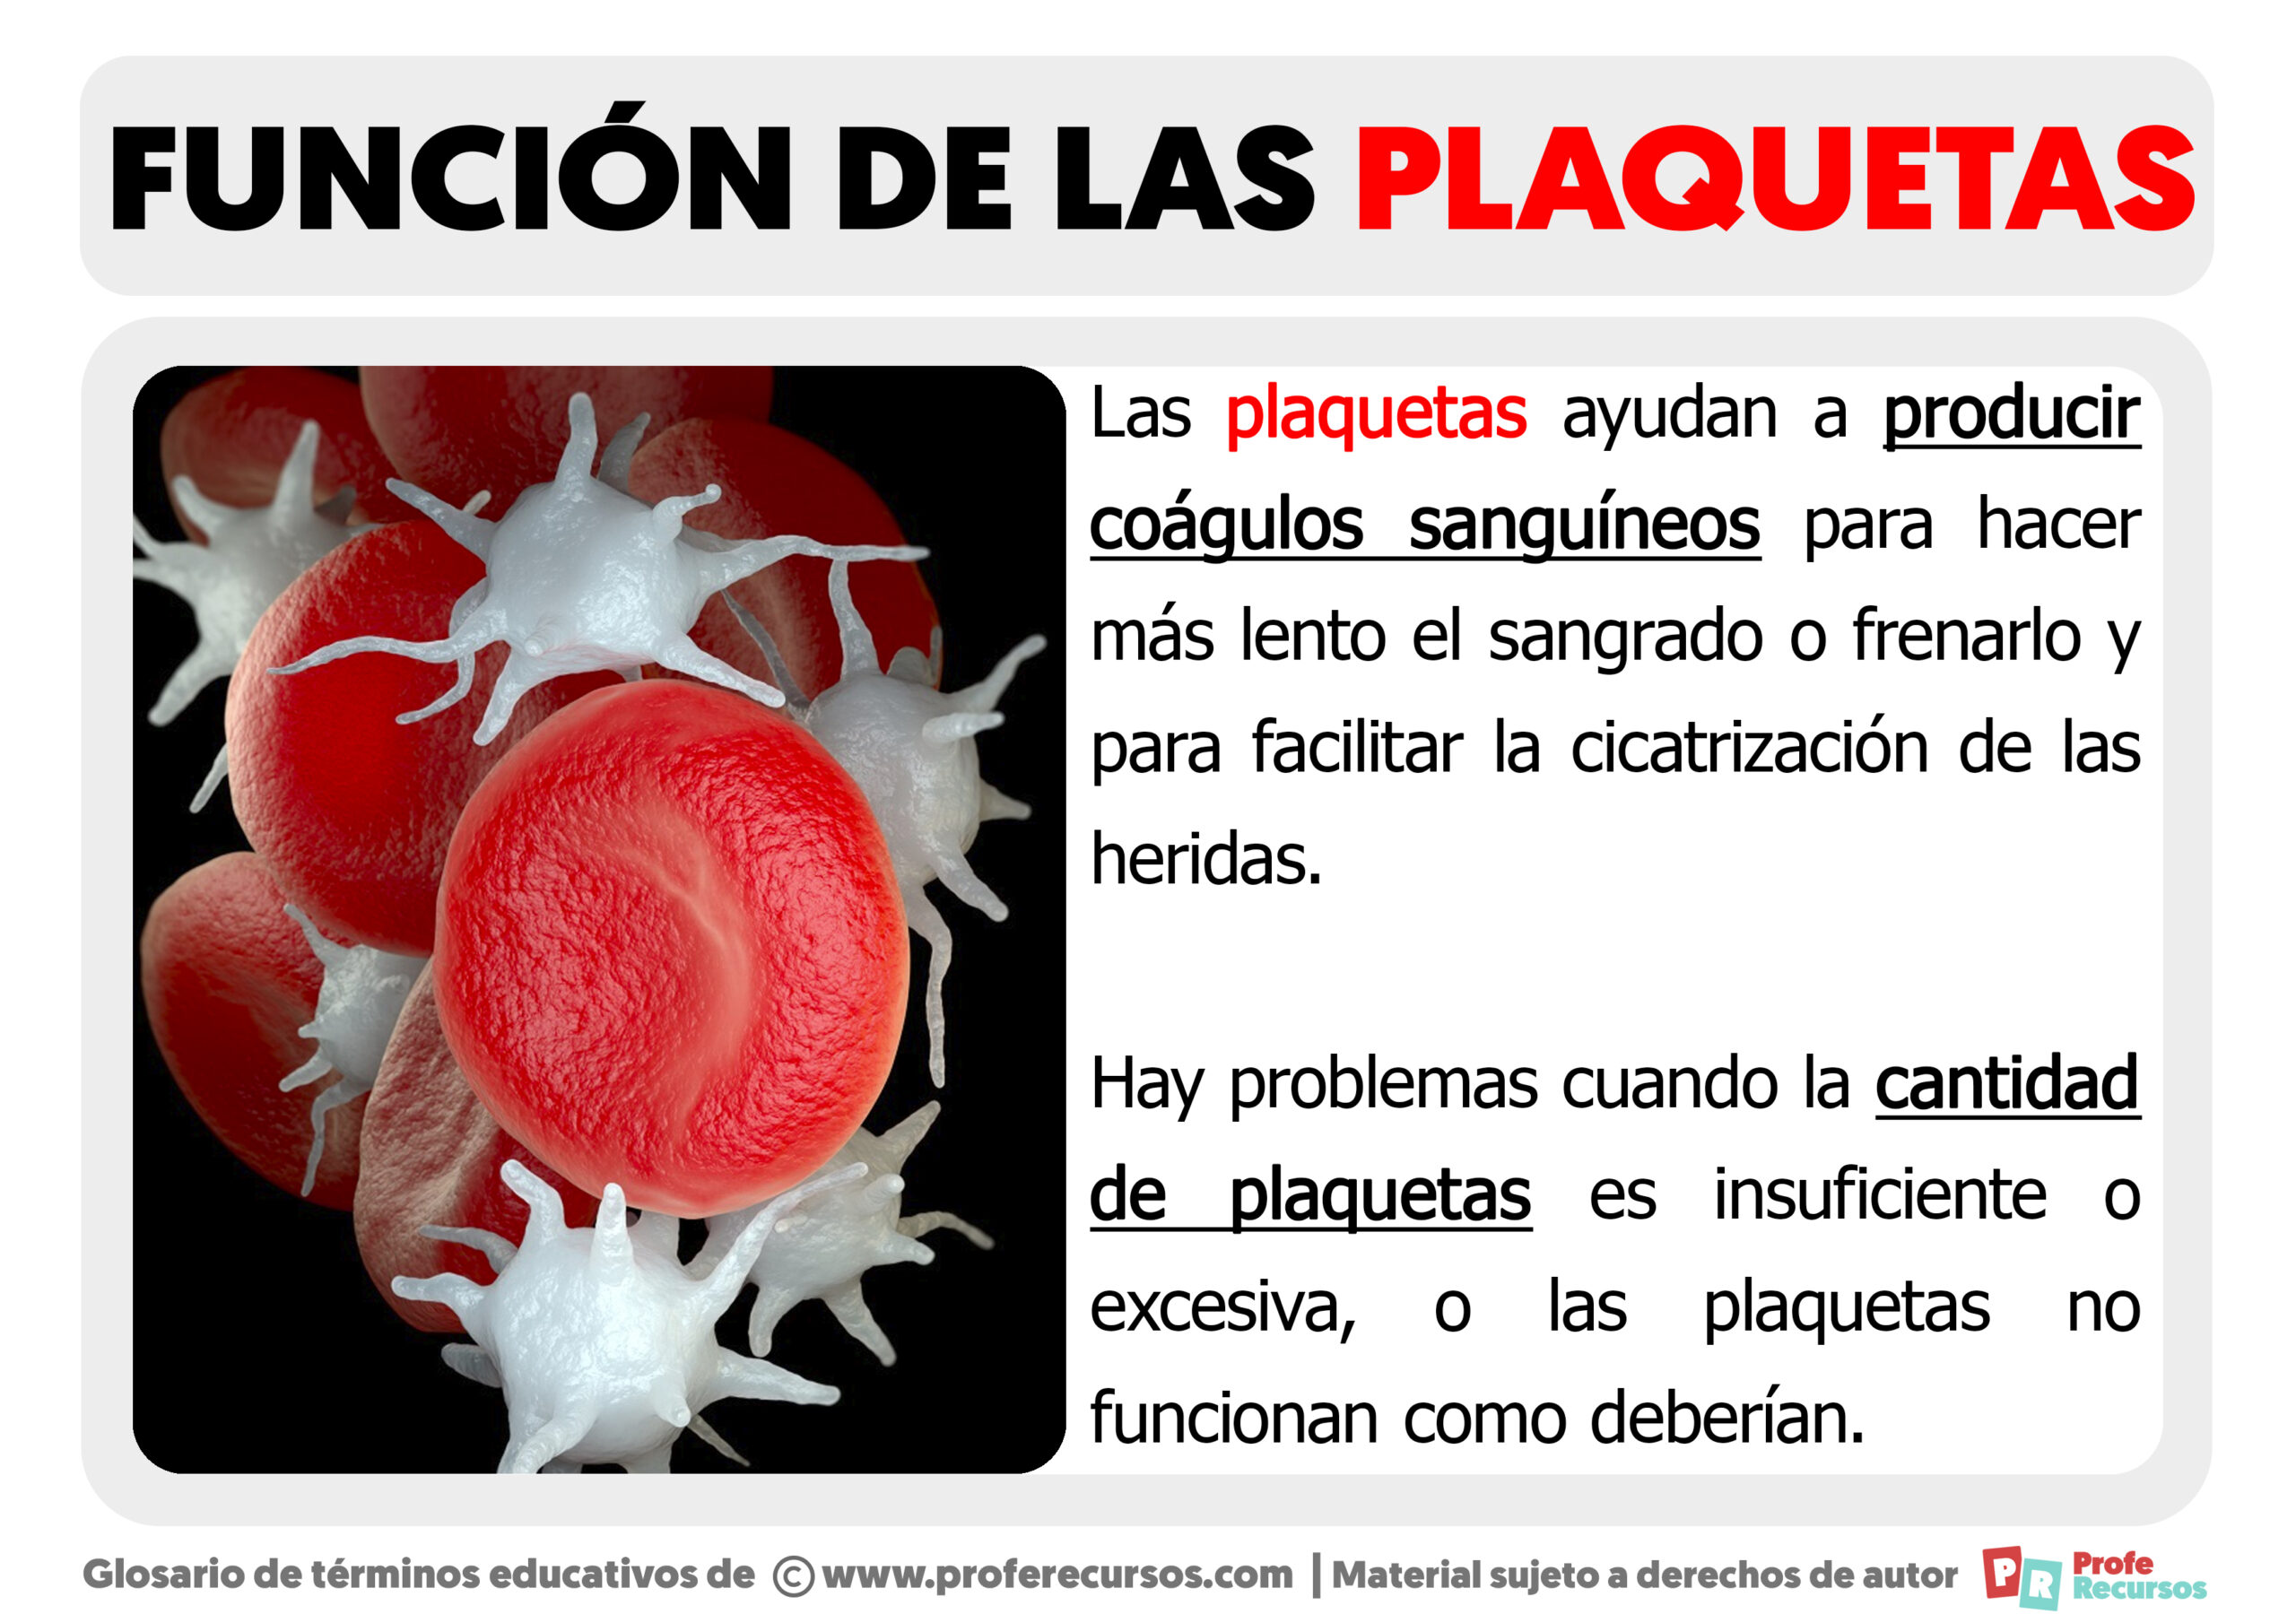 Funcion de las plaquetas